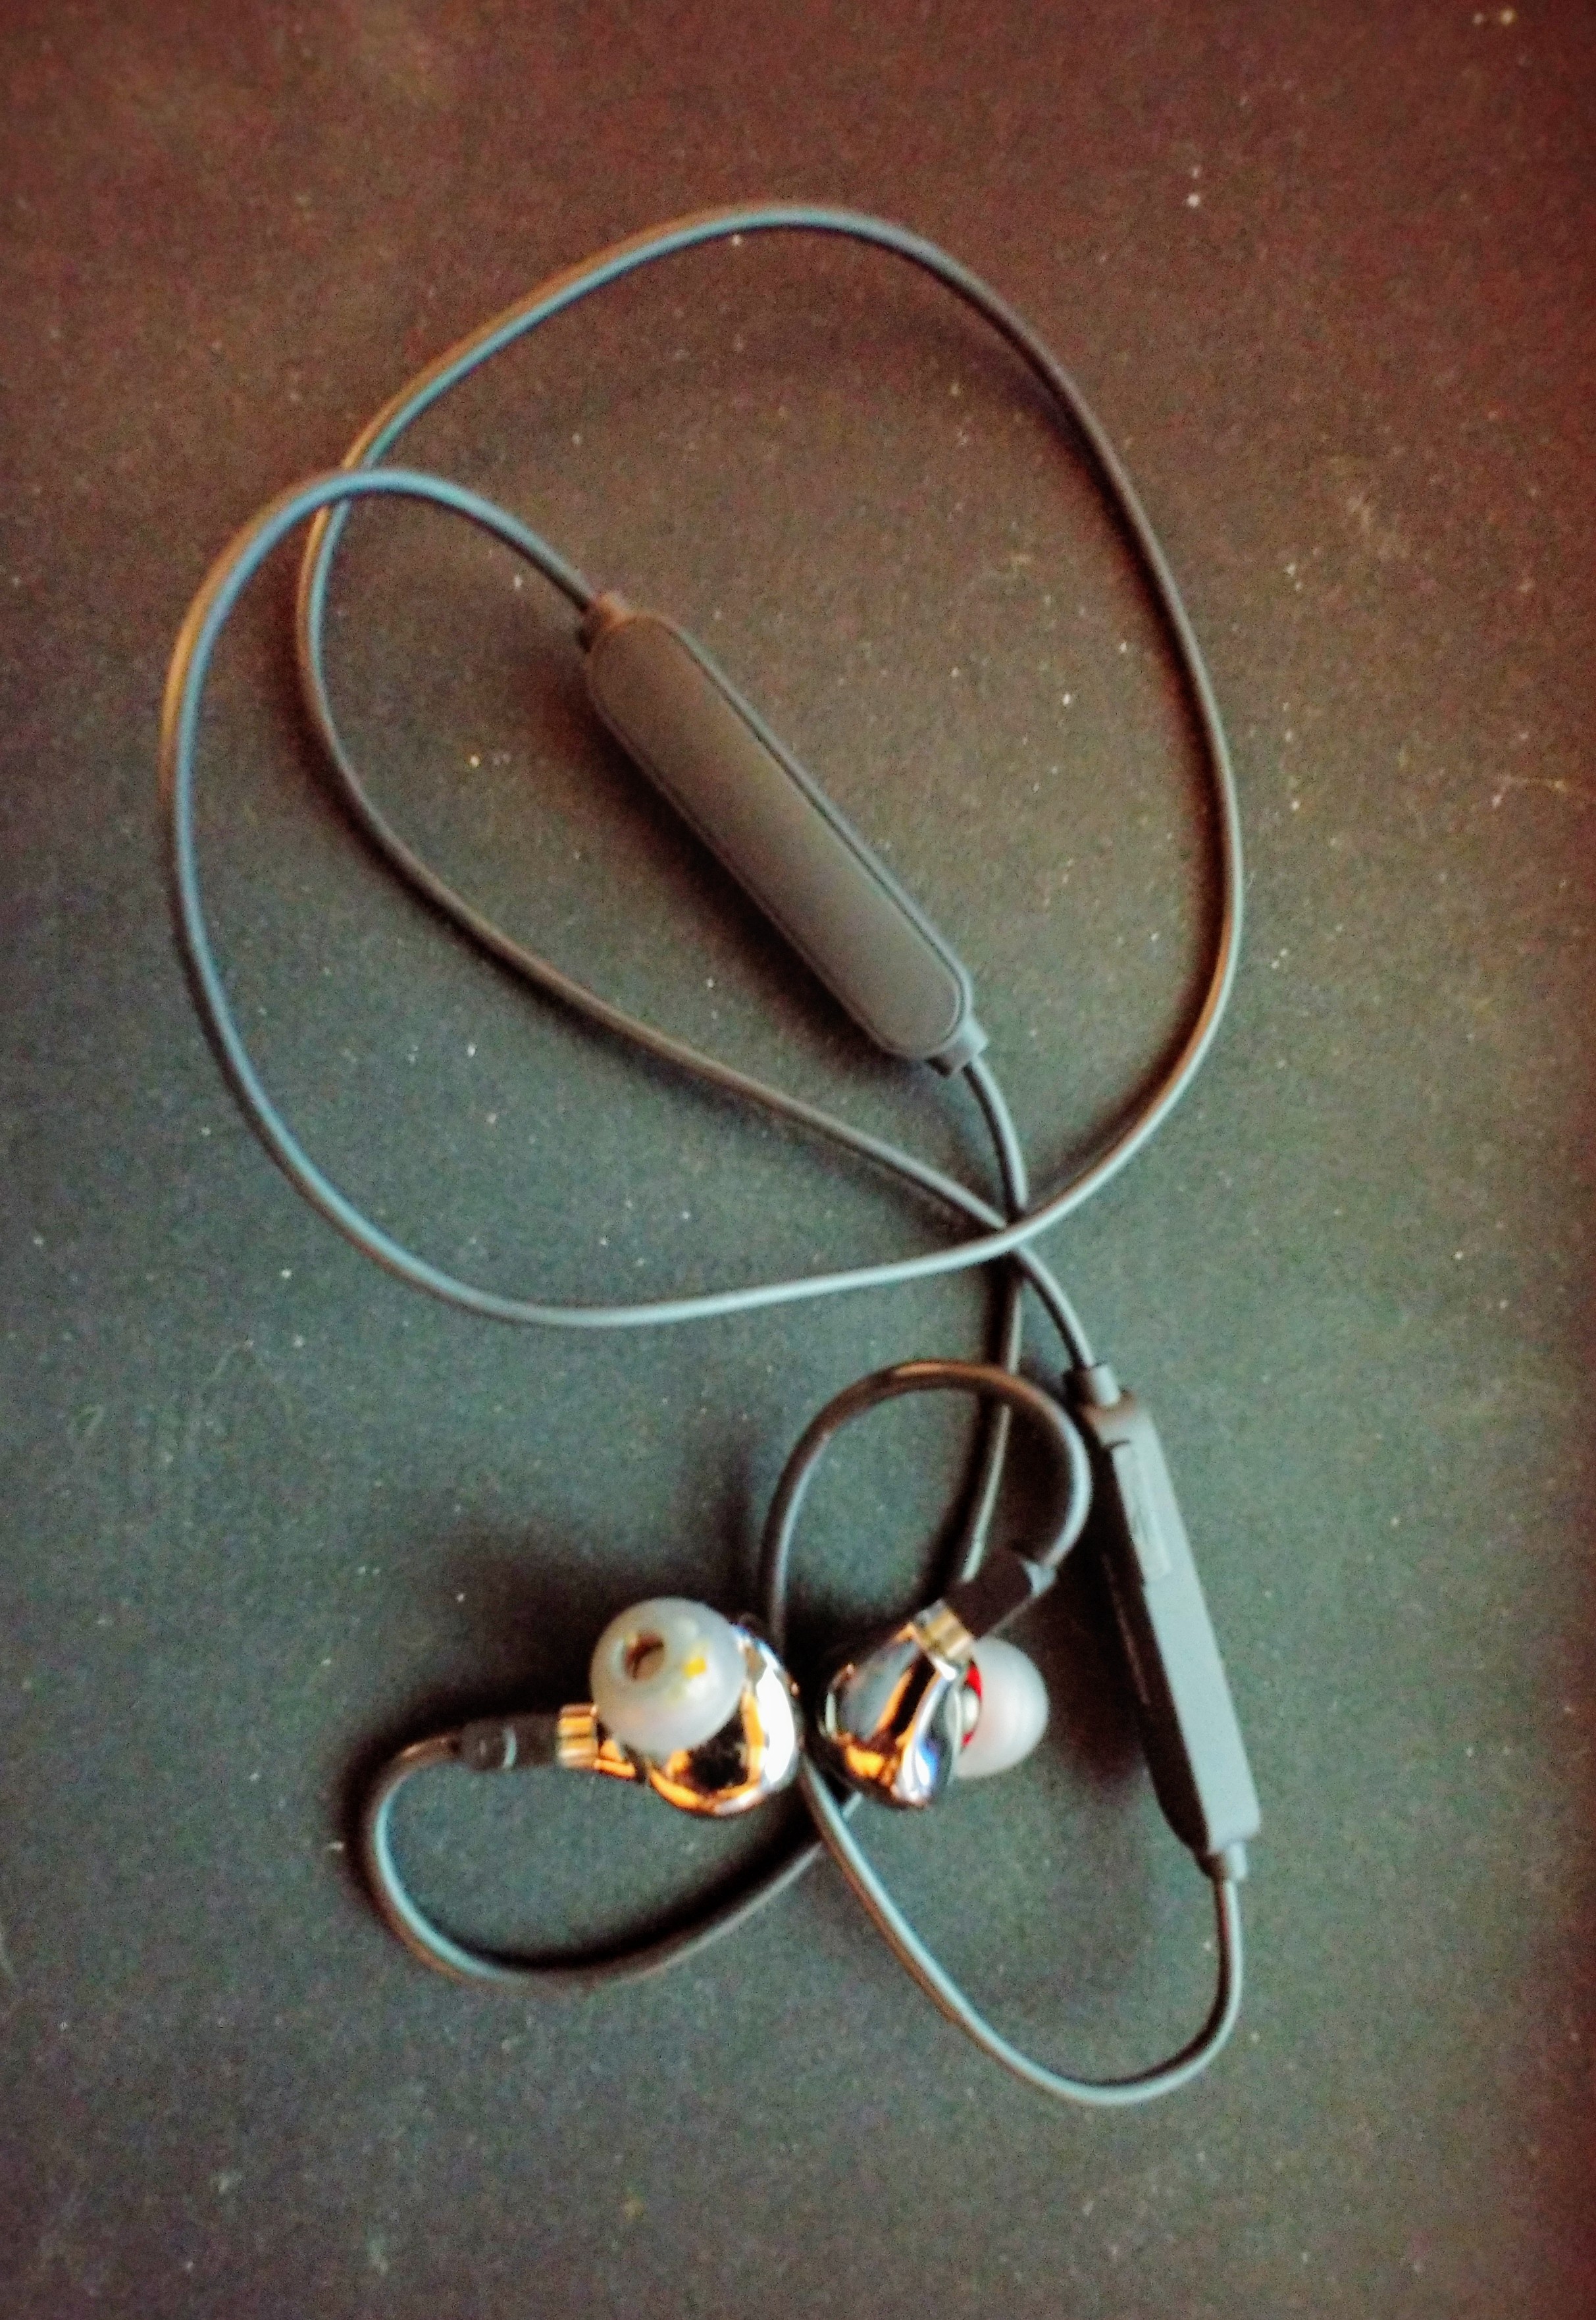 Blon 03 hype thread - In-Ear Monitors ...